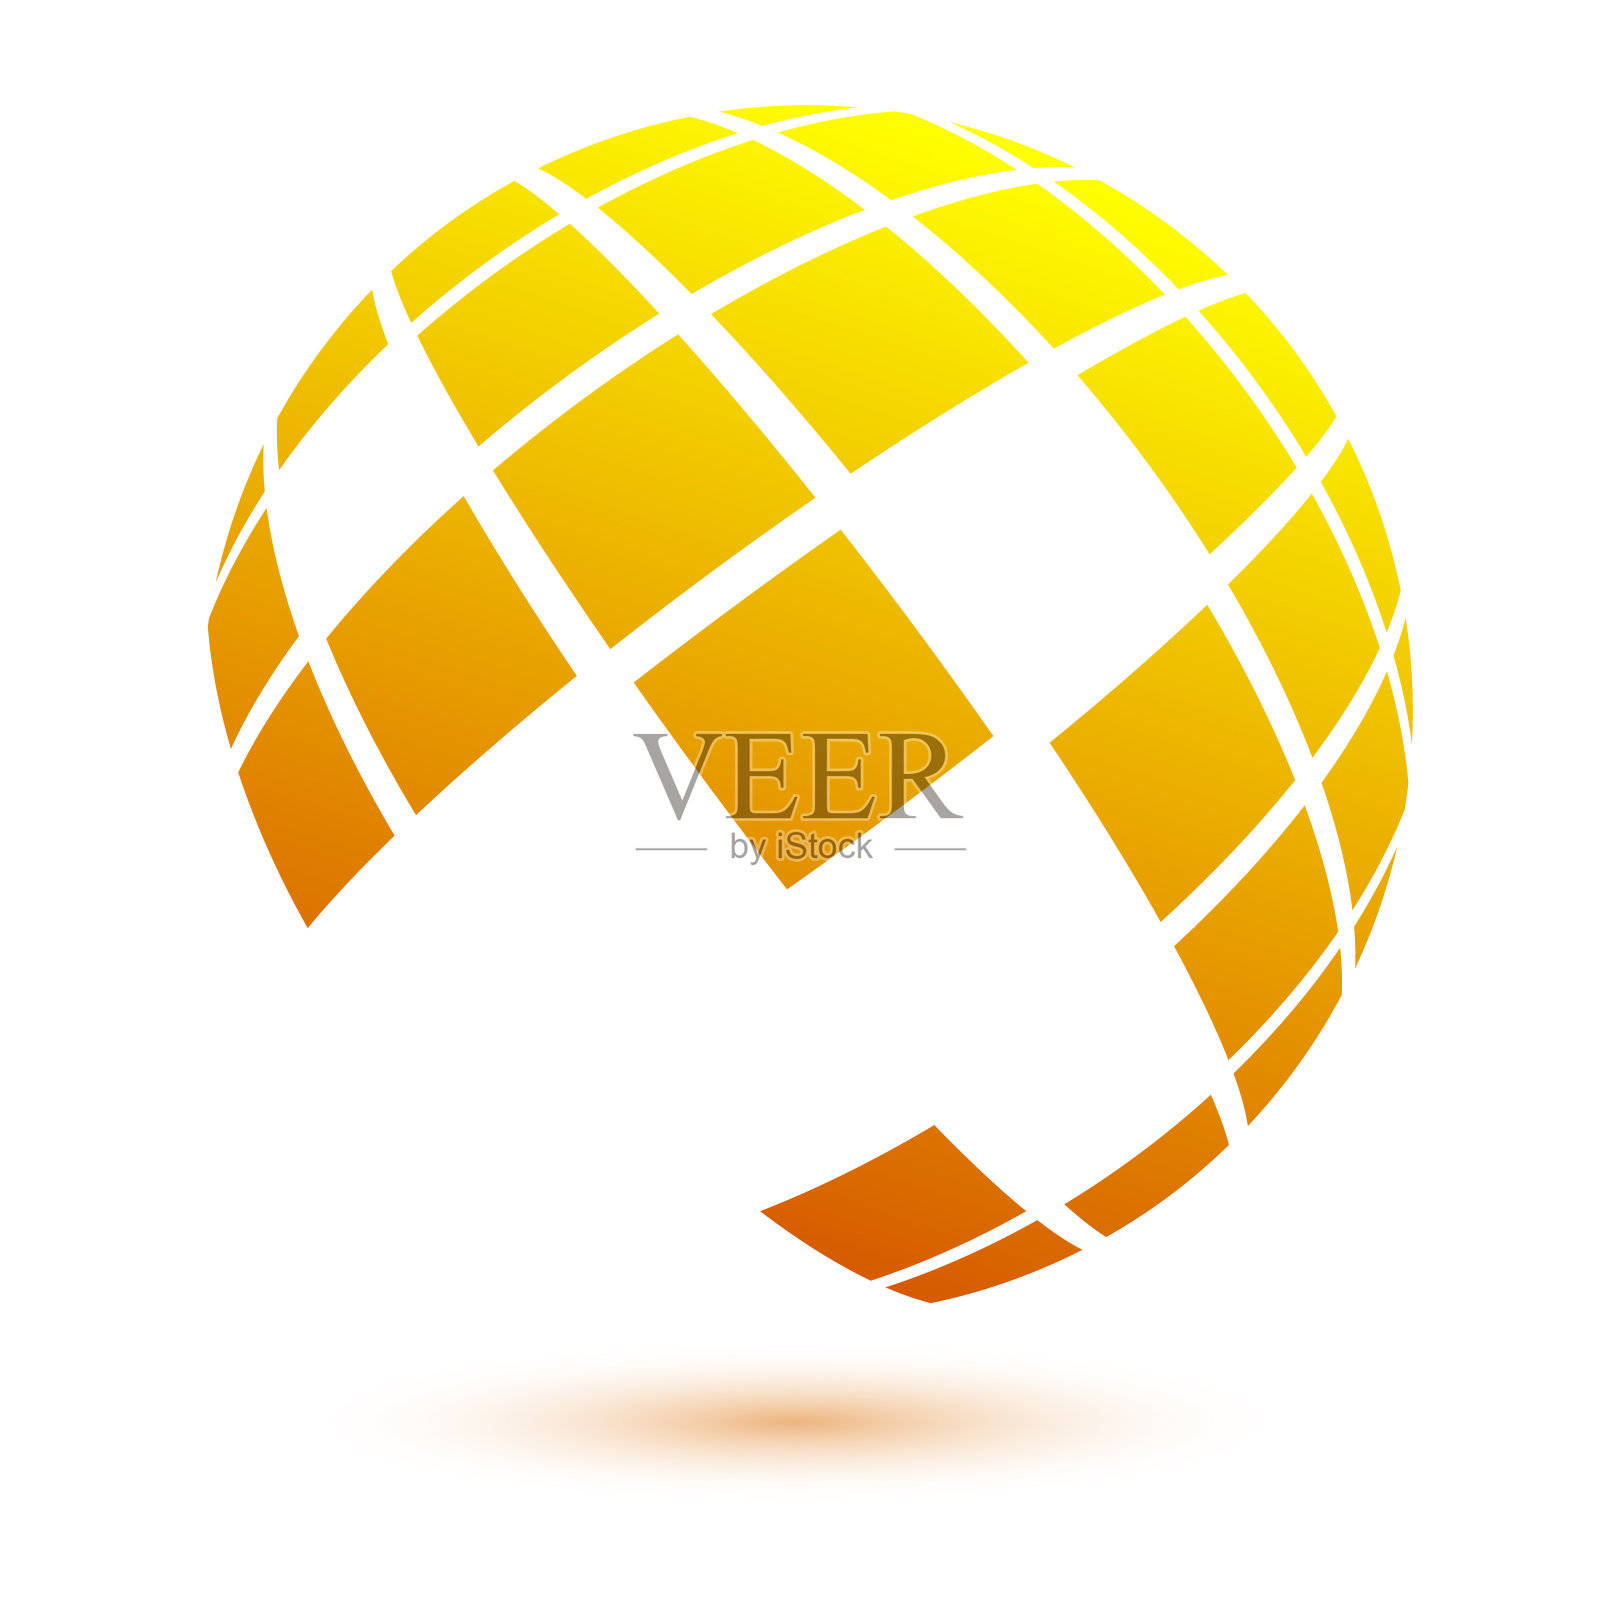 彩色矢量气球标志的网站设计。设计元素:标志、符号、按钮。股票矢量图设计元素图片